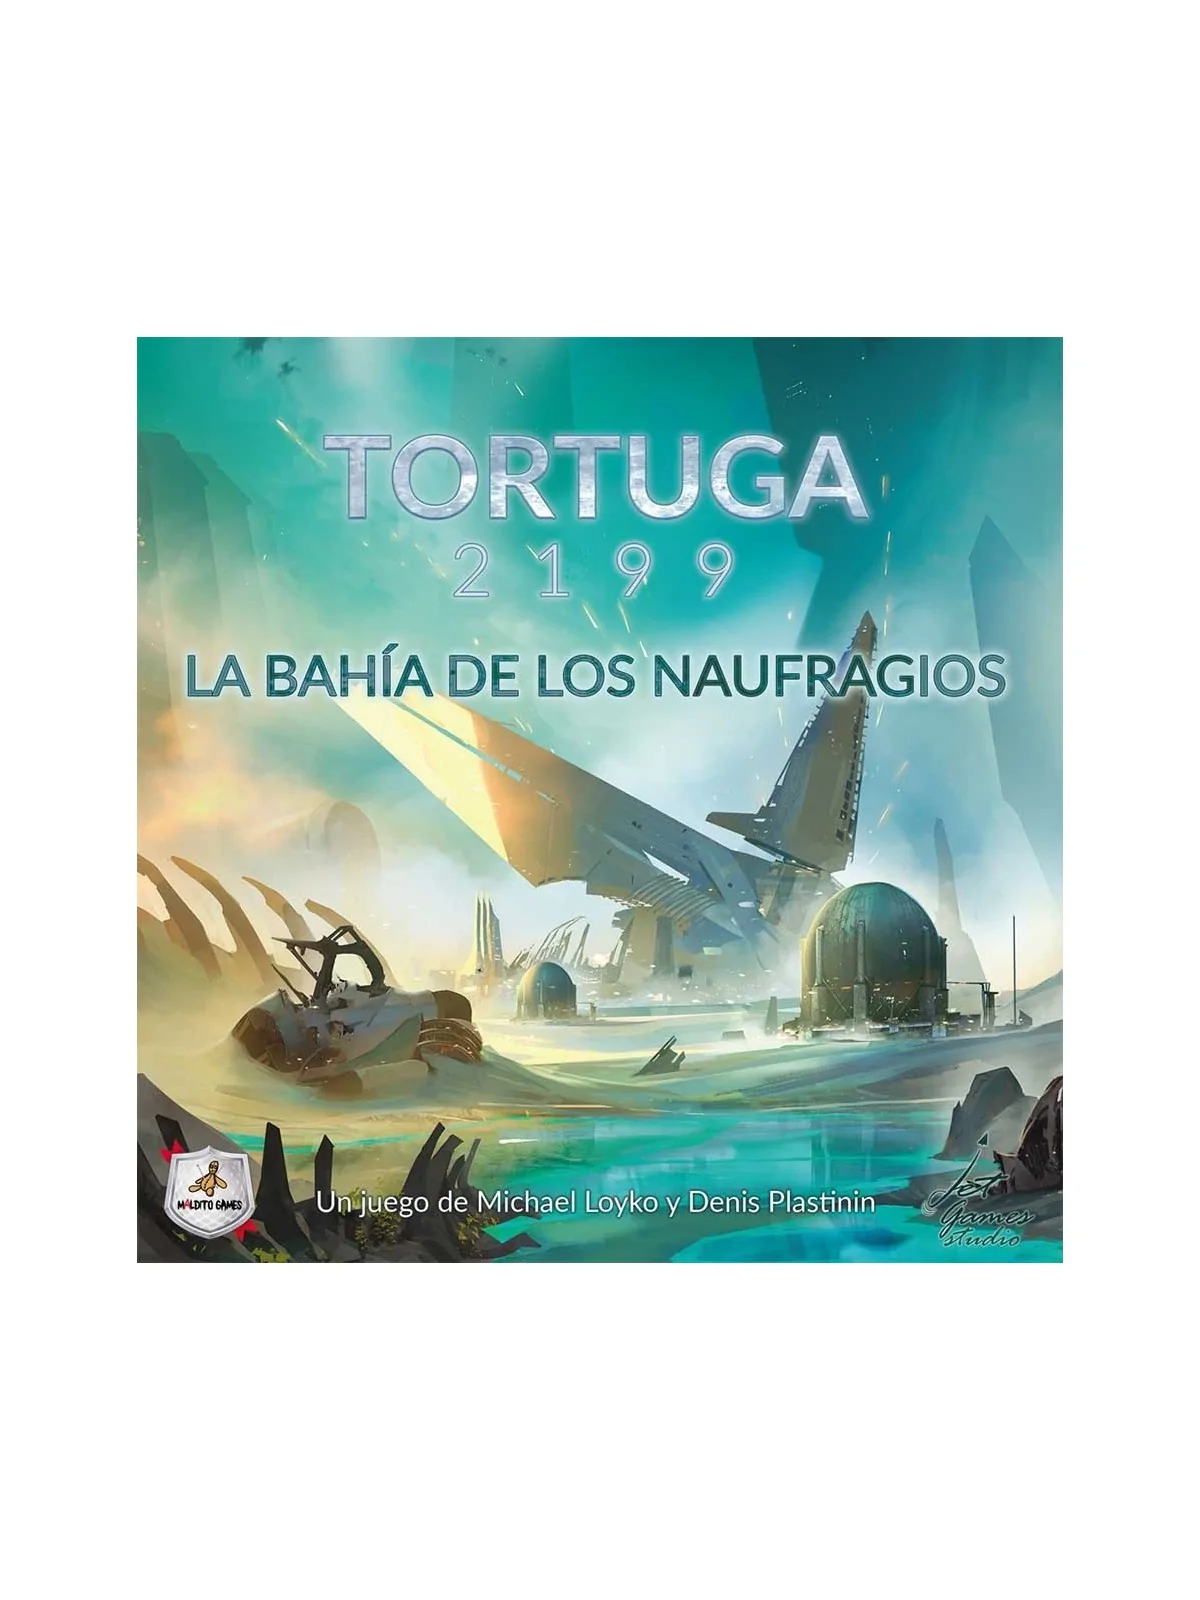 Comprar Tortuga 2199: La Bahía de los Naufragios barato al mejor preci